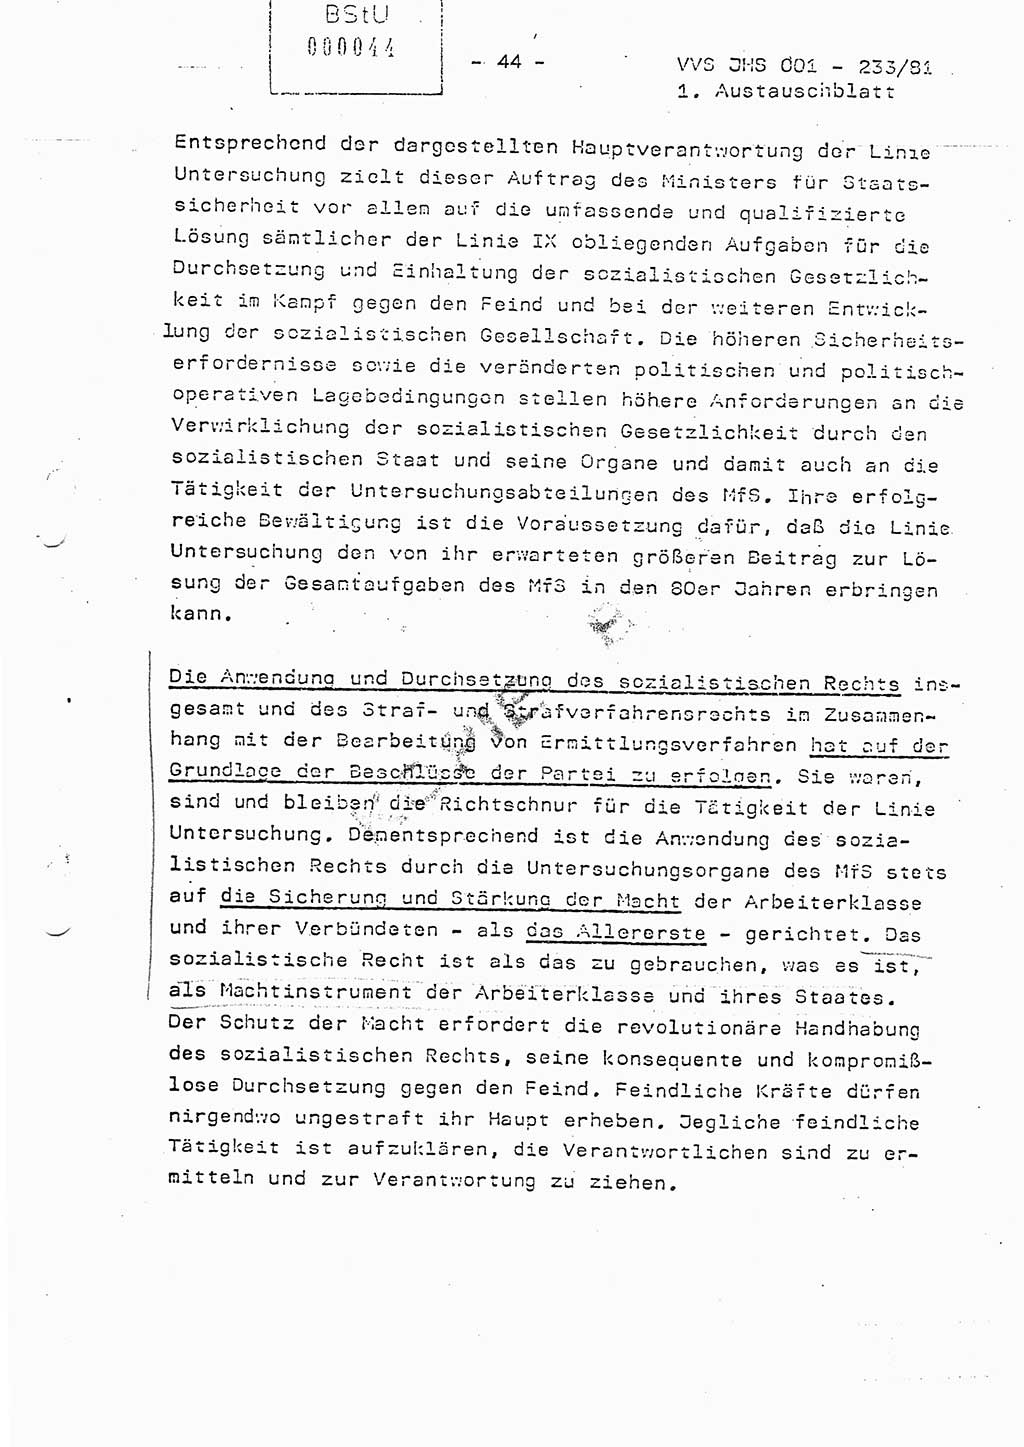 Dissertation Oberstleutnant Horst Zank (JHS), Oberstleutnant Dr. Karl-Heinz Knoblauch (JHS), Oberstleutnant Gustav-Adolf Kowalewski (HA Ⅸ), Oberstleutnant Wolfgang Plötner (HA Ⅸ), Ministerium für Staatssicherheit (MfS) [Deutsche Demokratische Republik (DDR)], Juristische Hochschule (JHS), Vertrauliche Verschlußsache (VVS) o001-233/81, Potsdam 1981, Blatt 44 (Diss. MfS DDR JHS VVS o001-233/81 1981, Bl. 44)